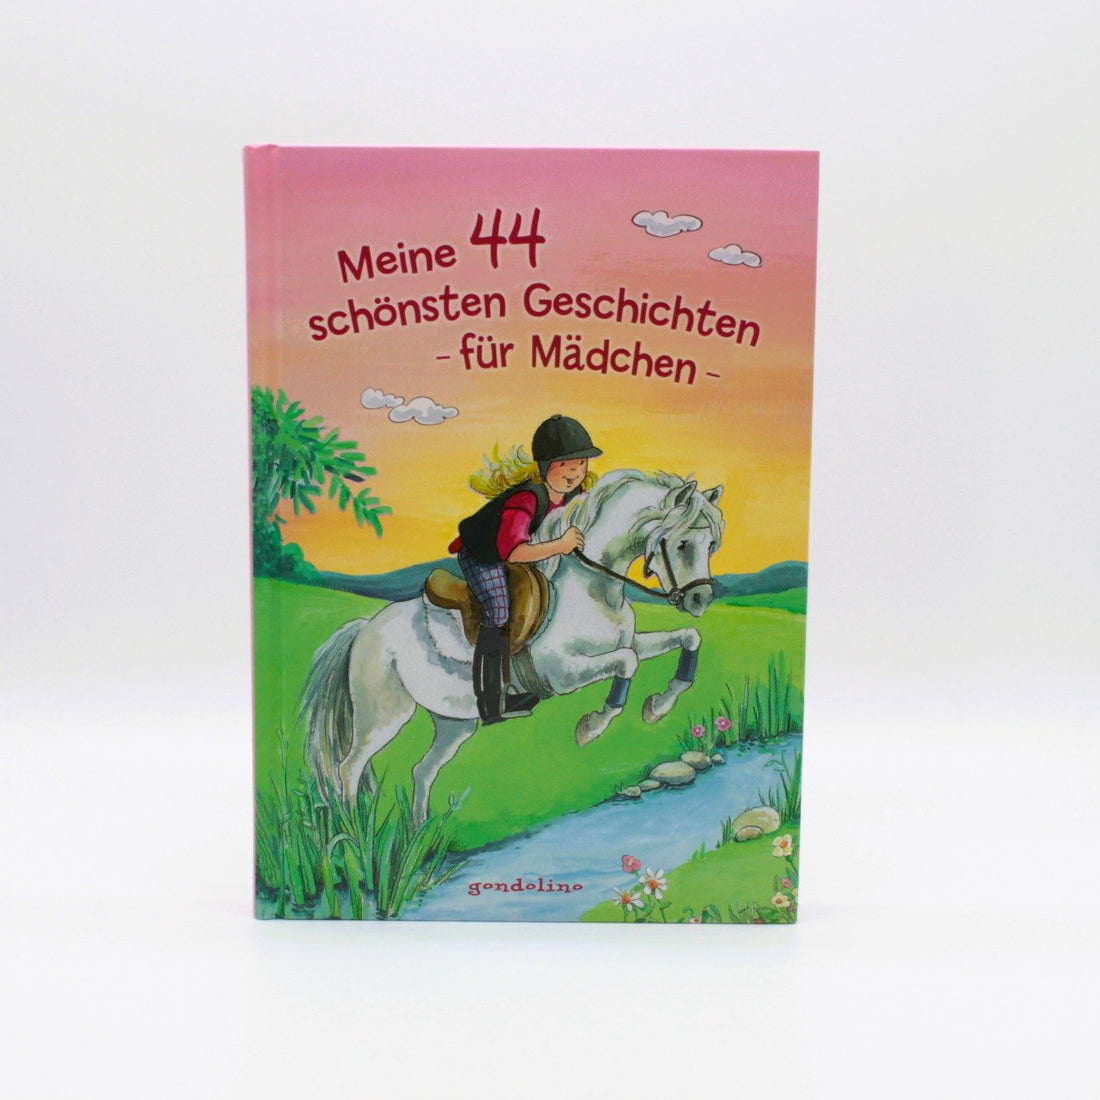 Grundschul-Buch - gondolino - Meine 44 schönsten Geschichten für Mädchen